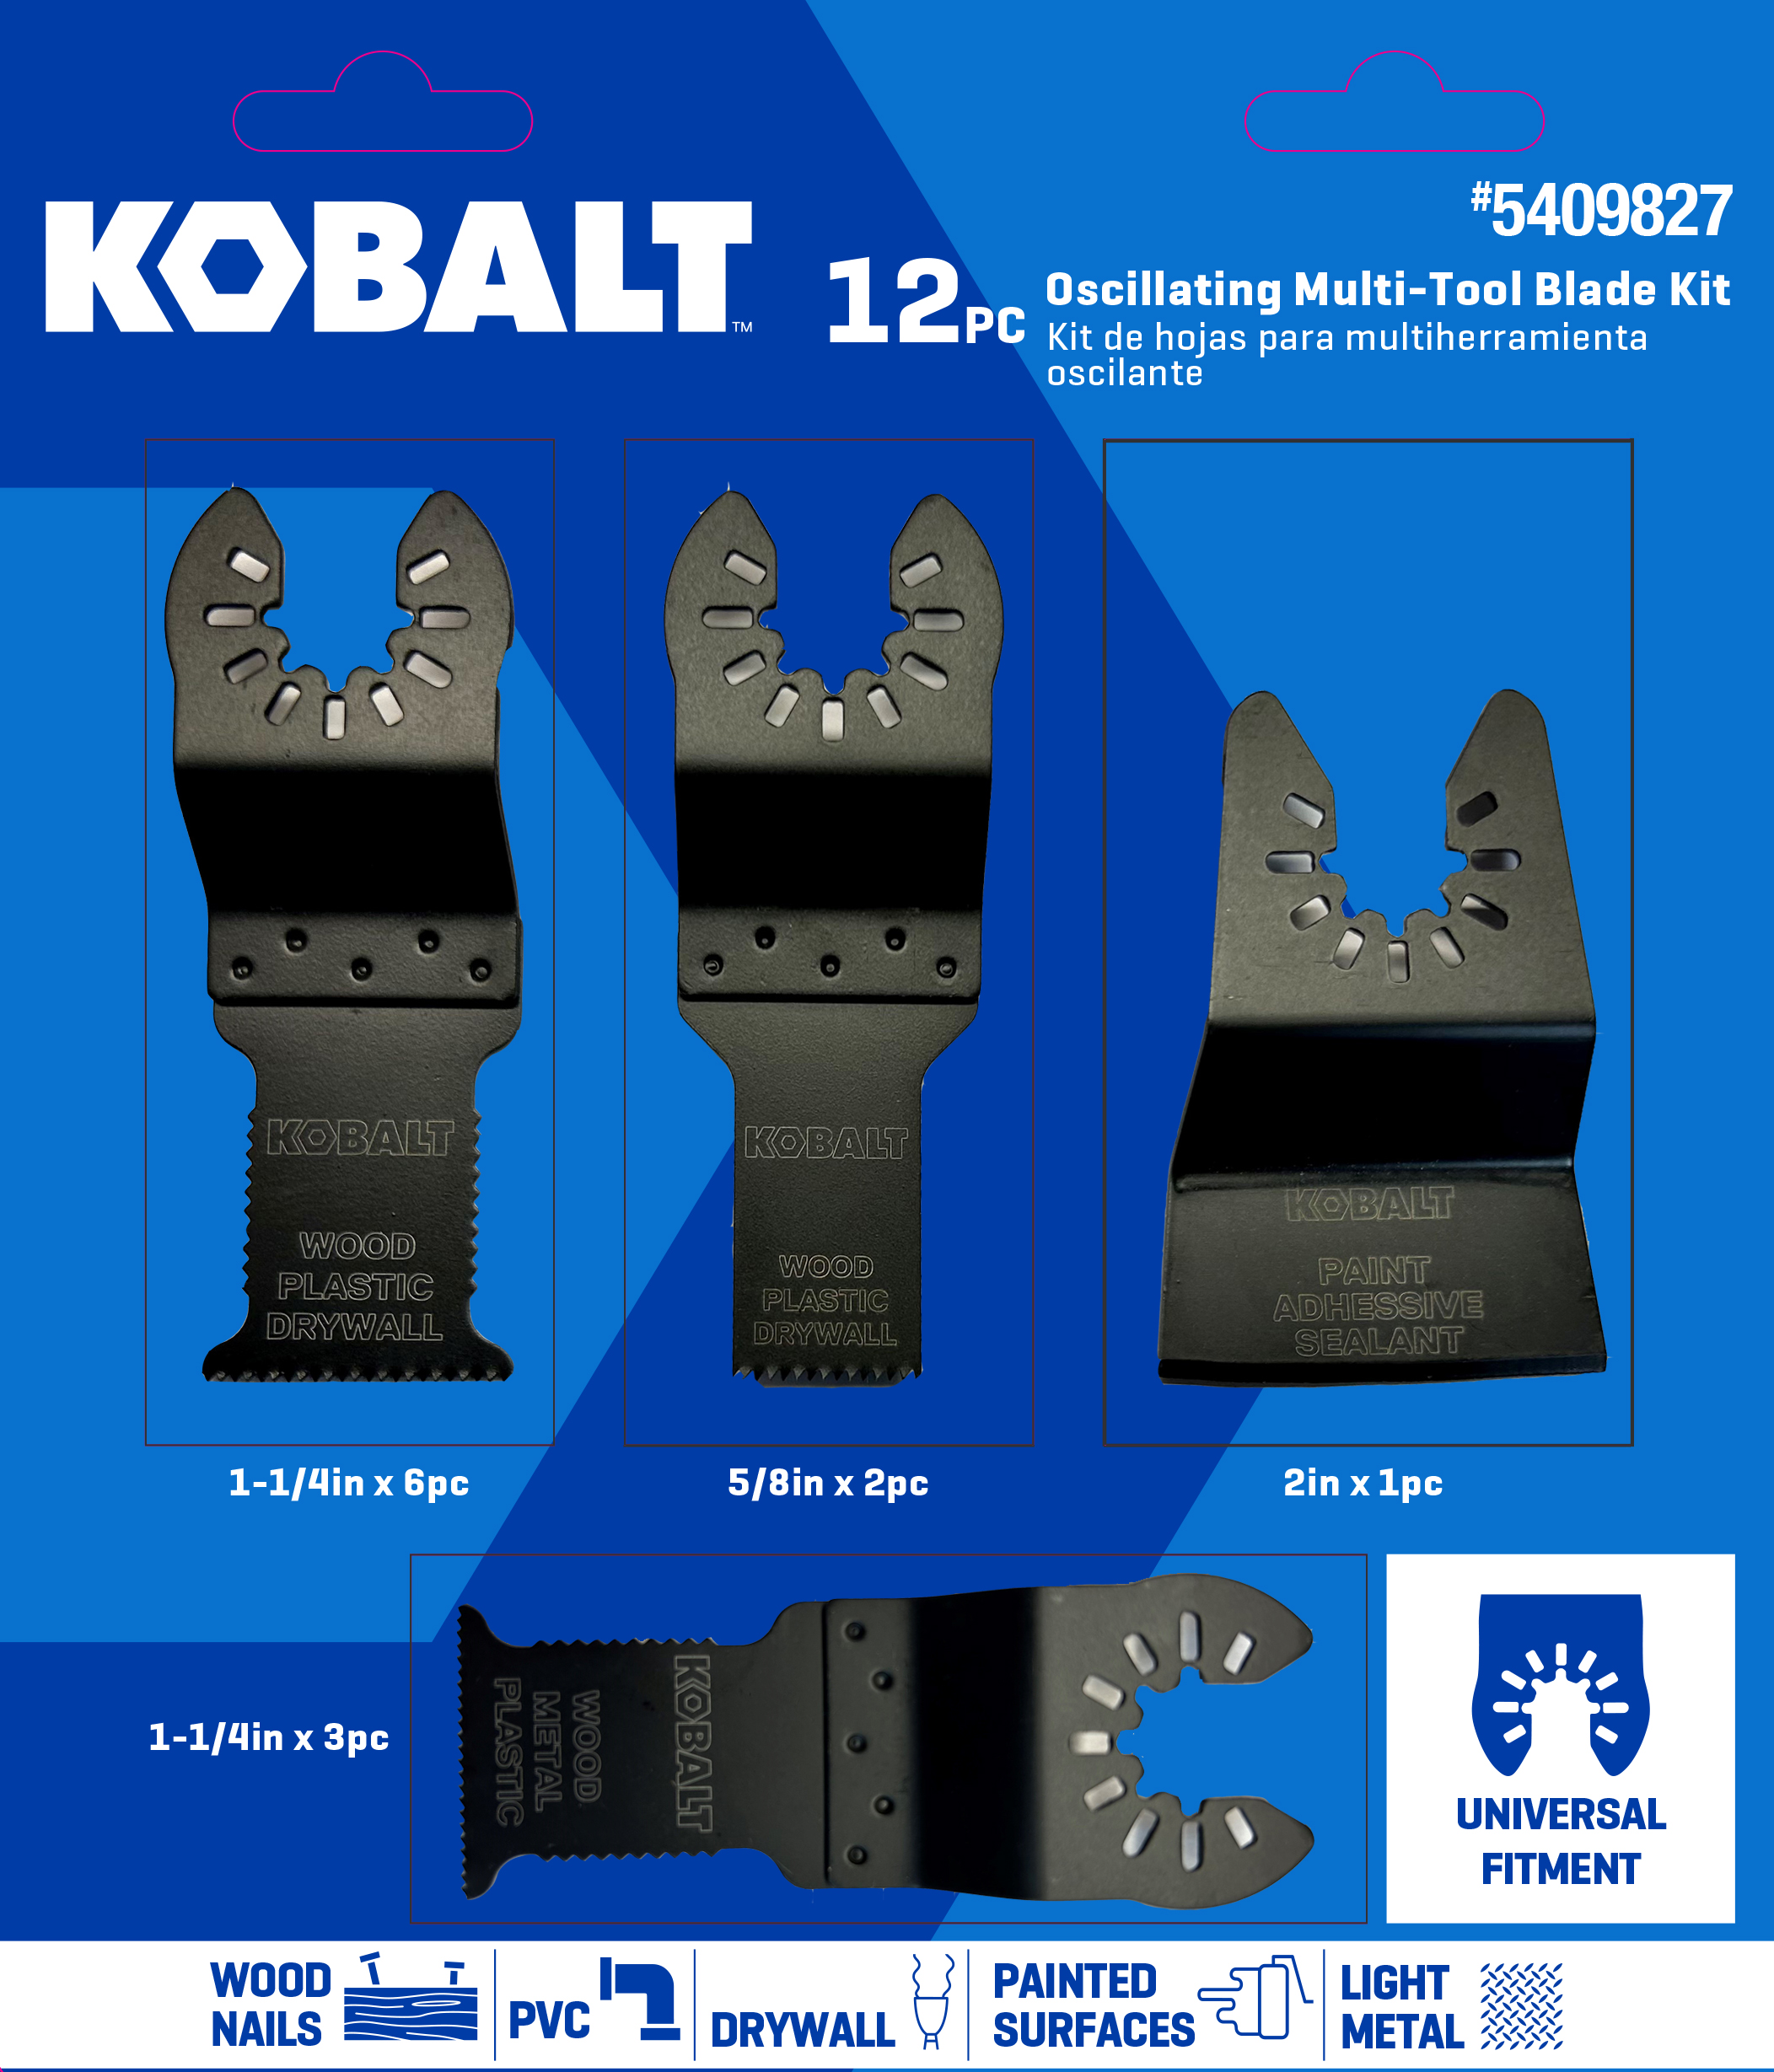 Kobalt KMTA 124-03